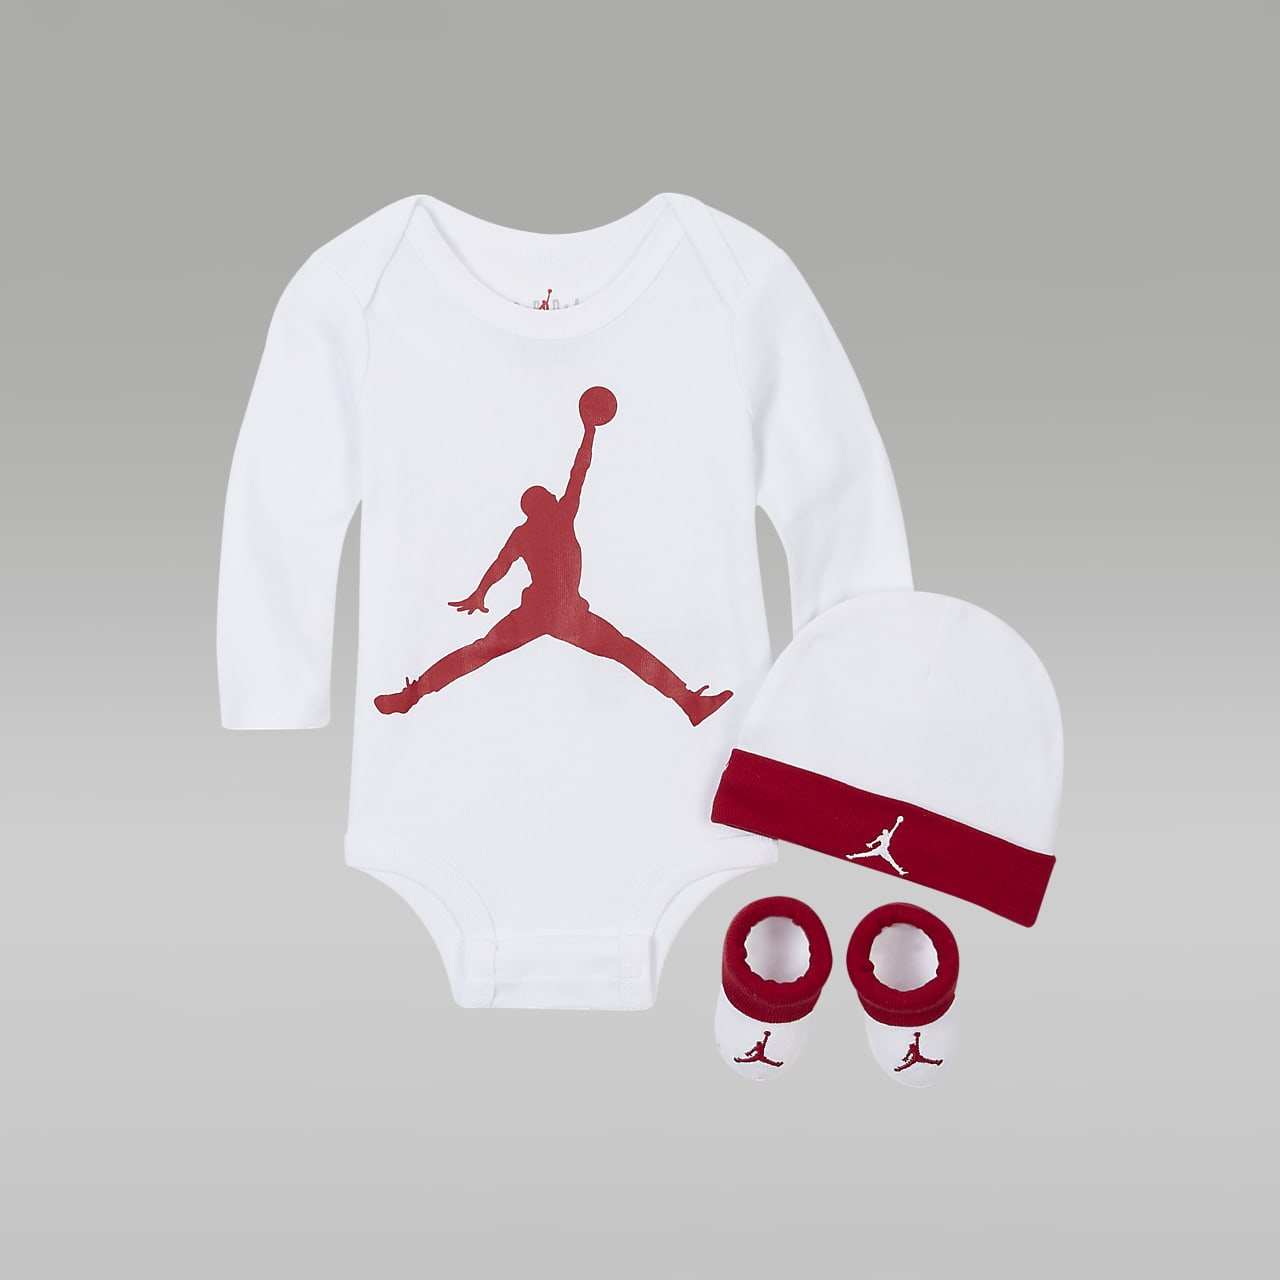 Jordan coffret Jumpman "logo" manches longues bébé white/red